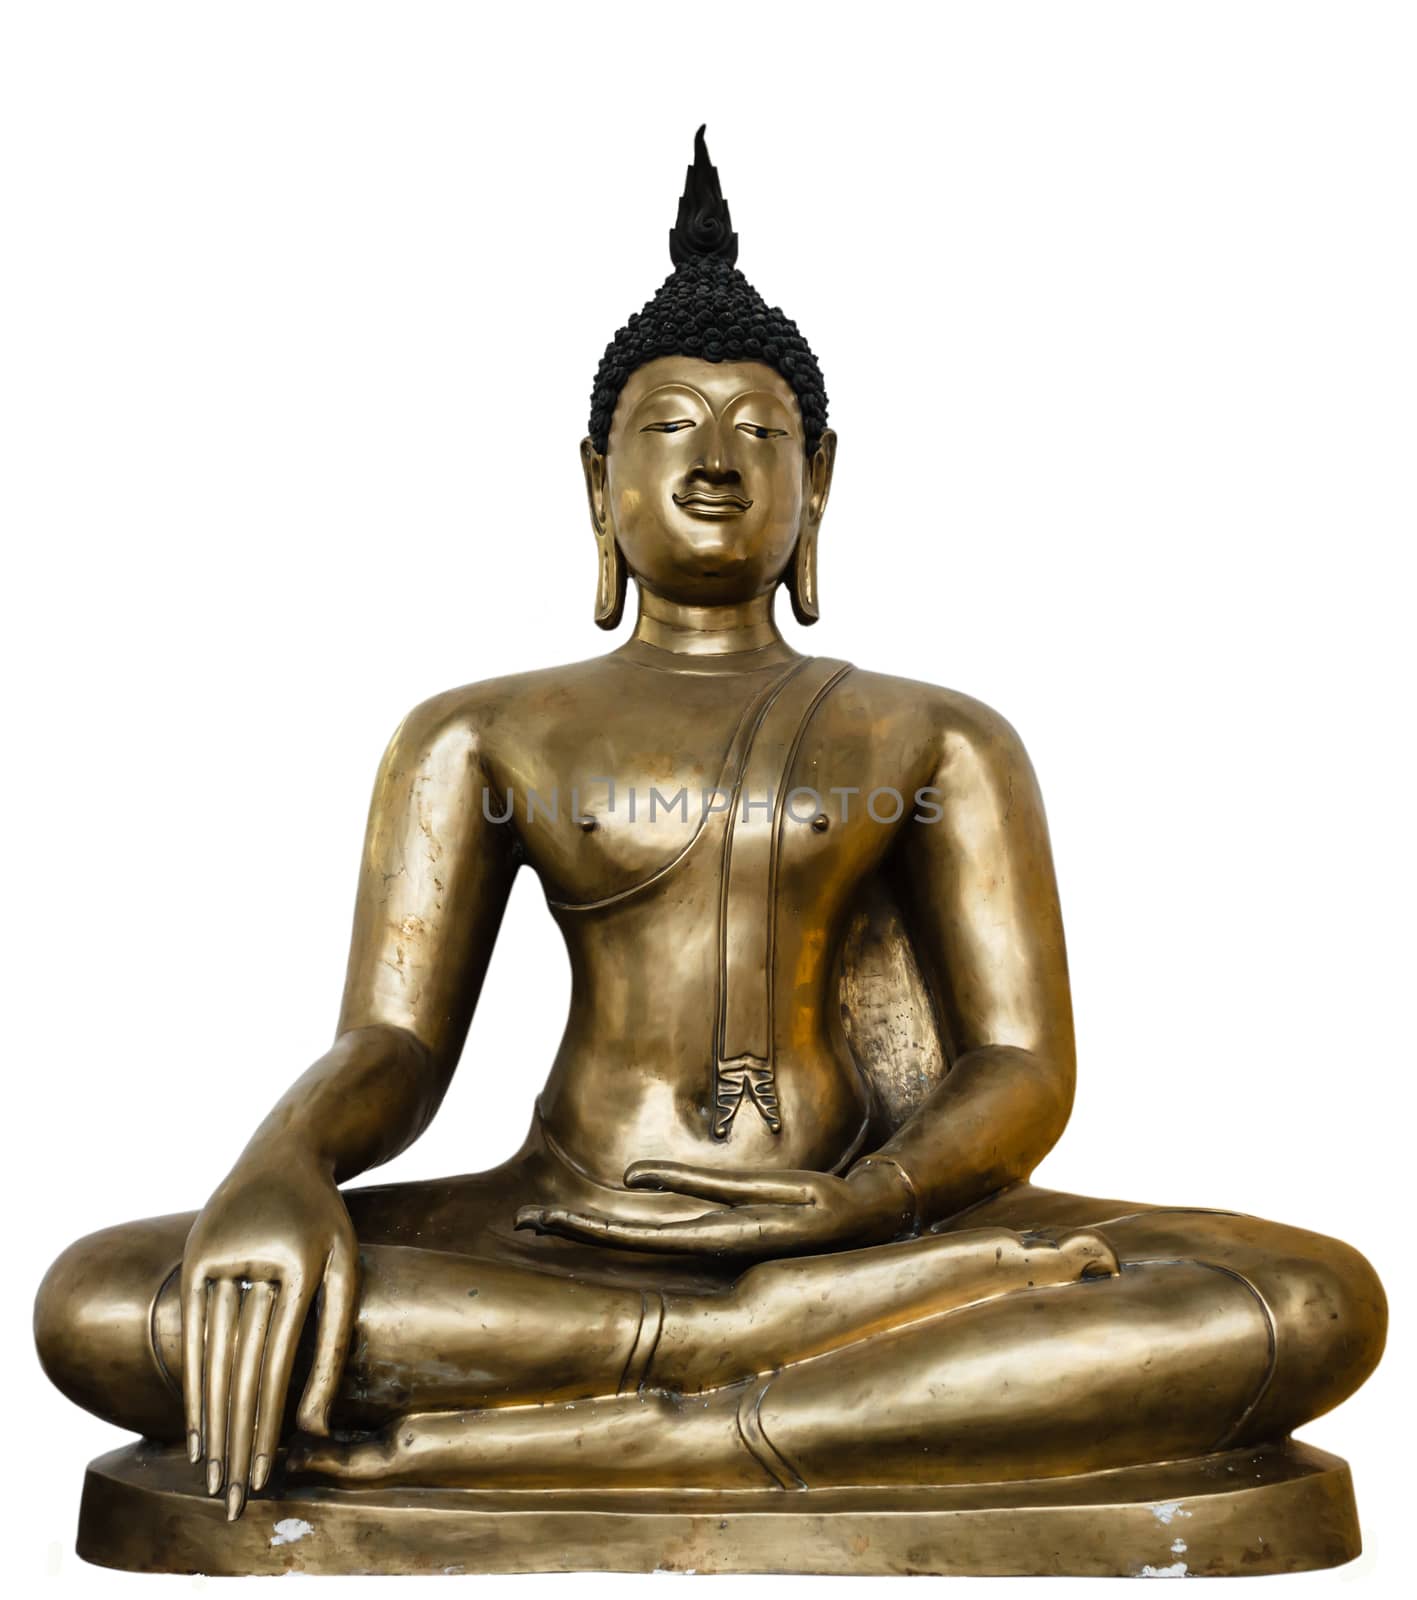 Ancient Buddha Image Isolated on White Background.